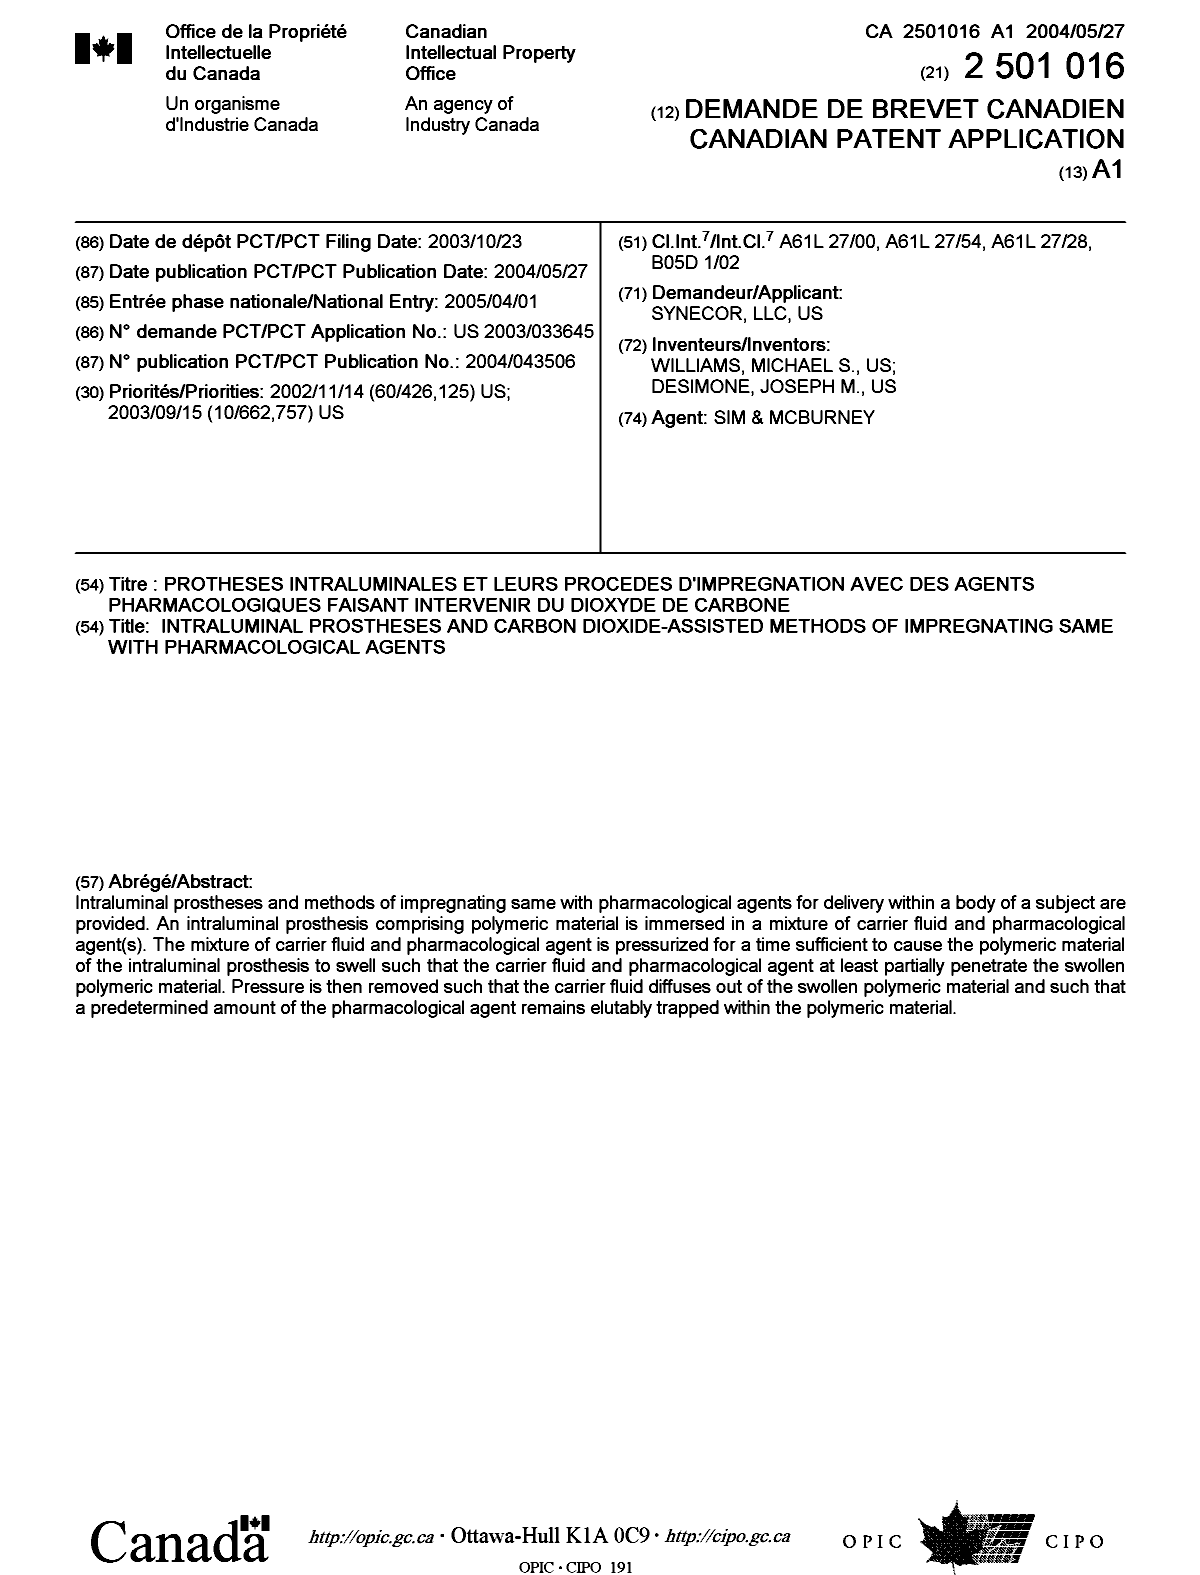 Document de brevet canadien 2501016. Page couverture 20050622. Image 1 de 1